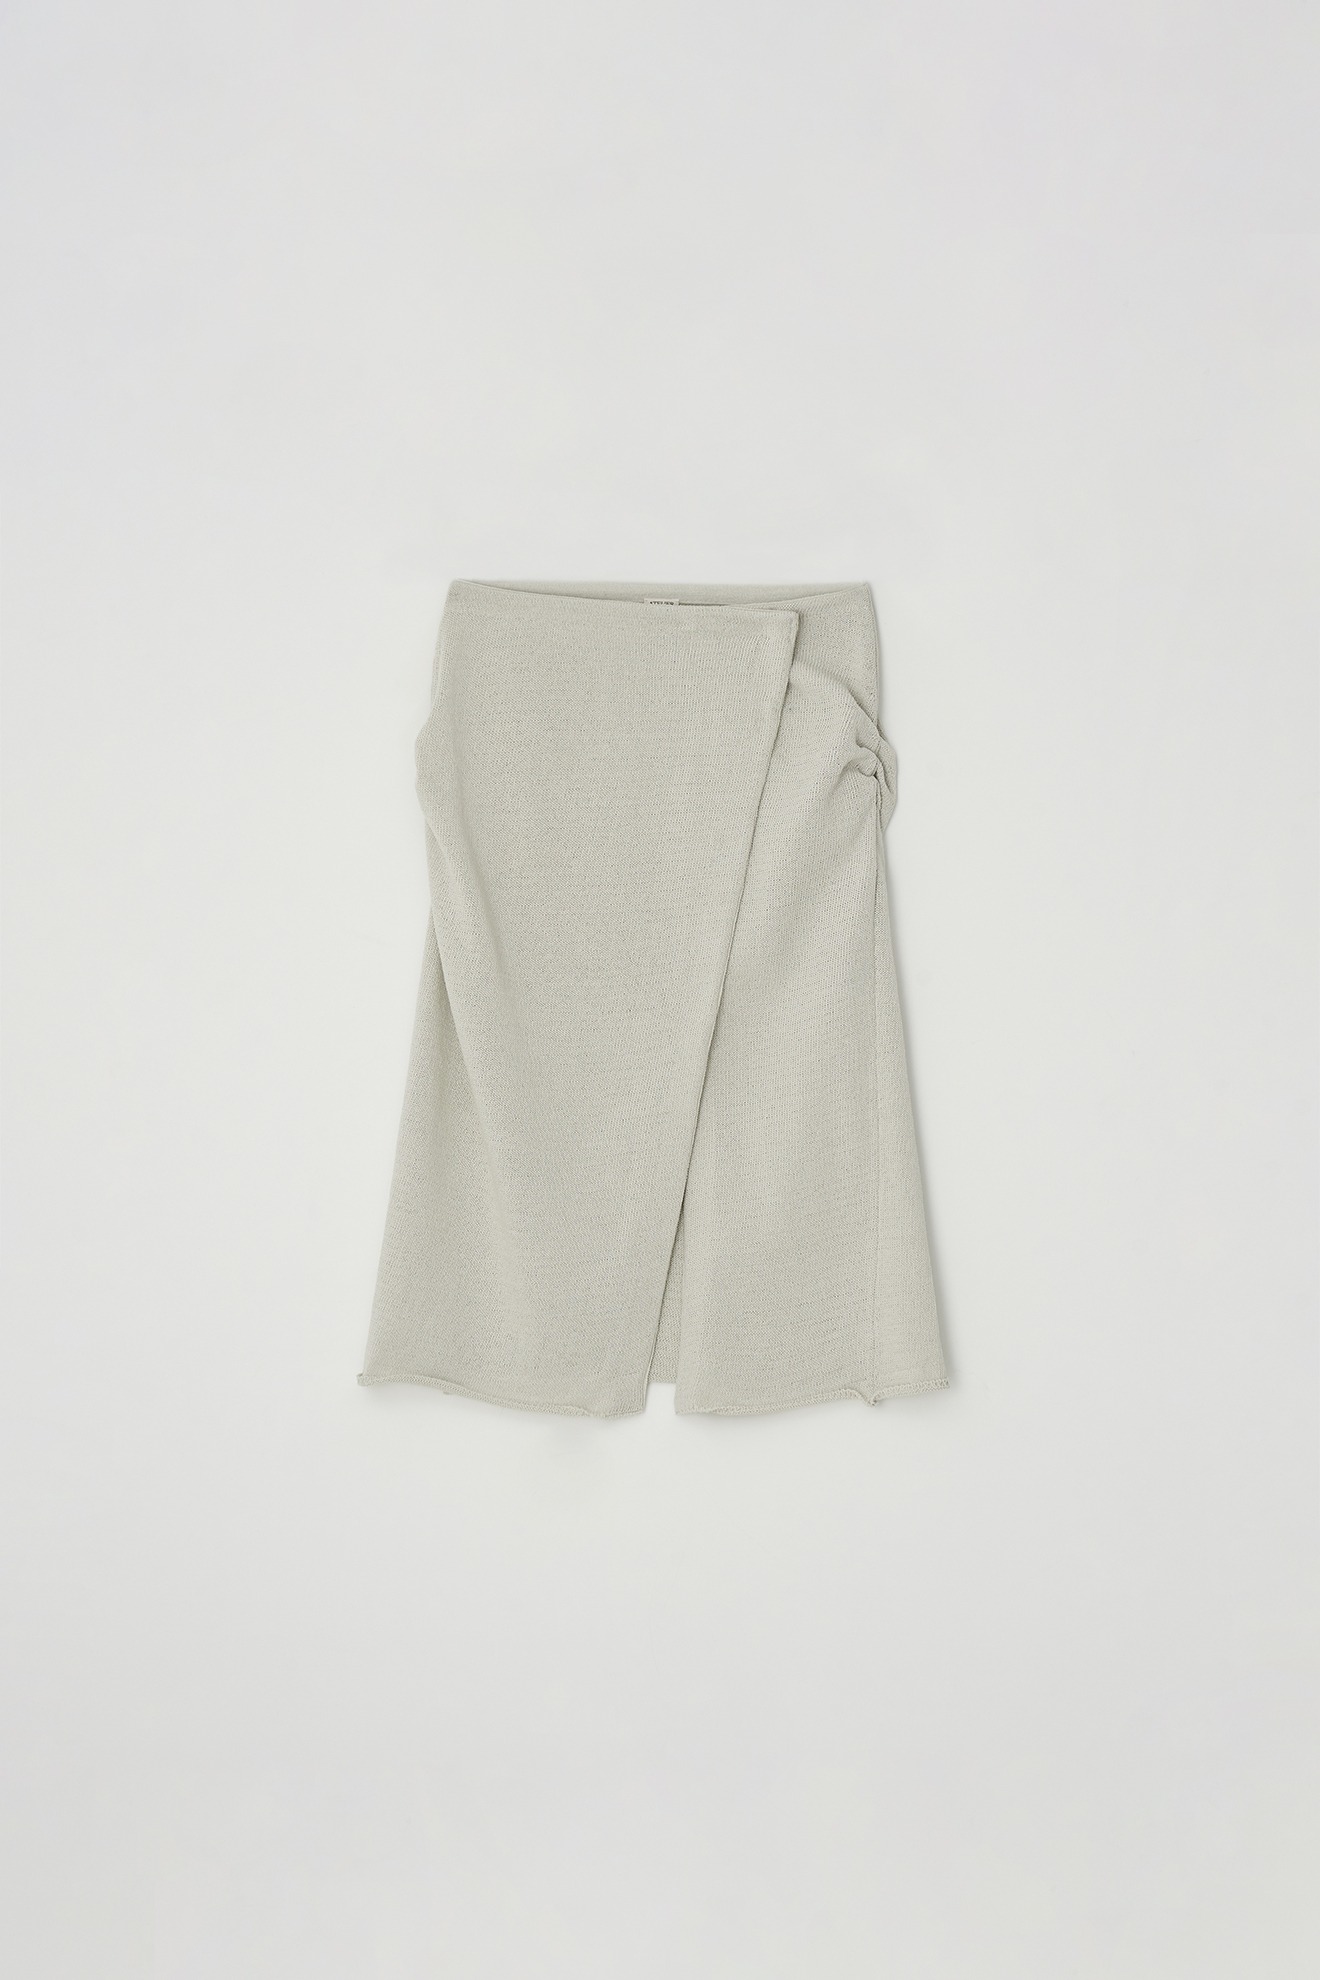 Wrap Knit Skirt (melange gray)